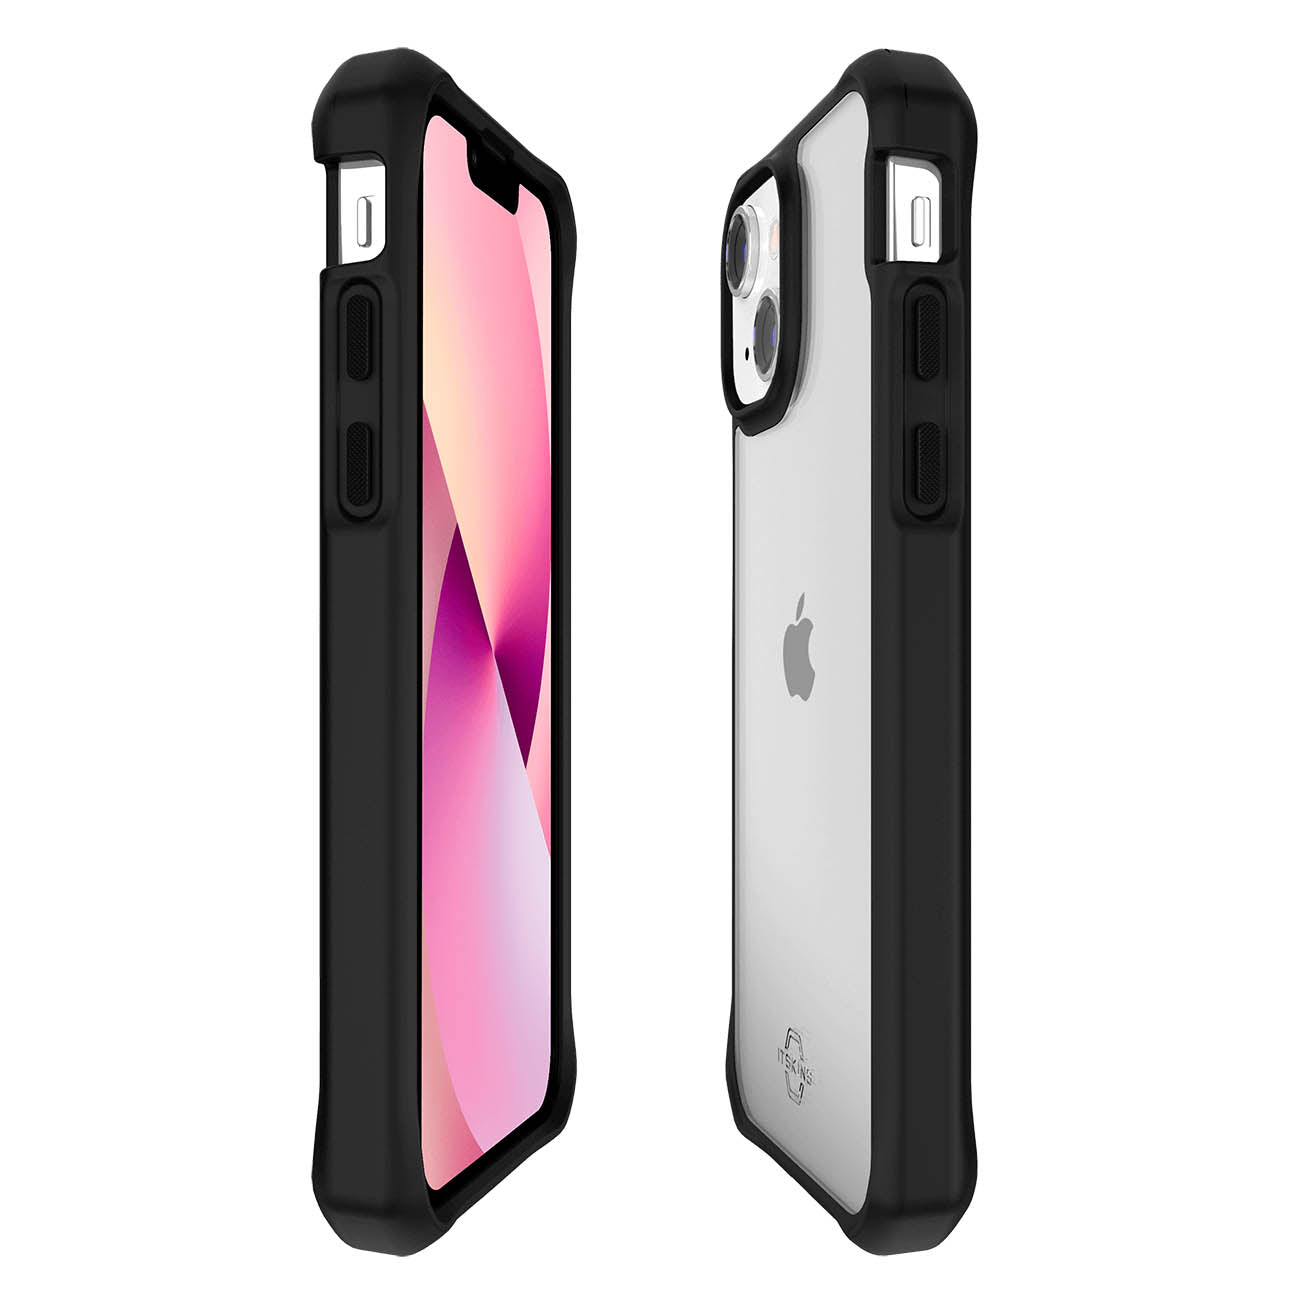 ITSKINS Hybrid Solid Case For iPhone 13 - Black/Transparent